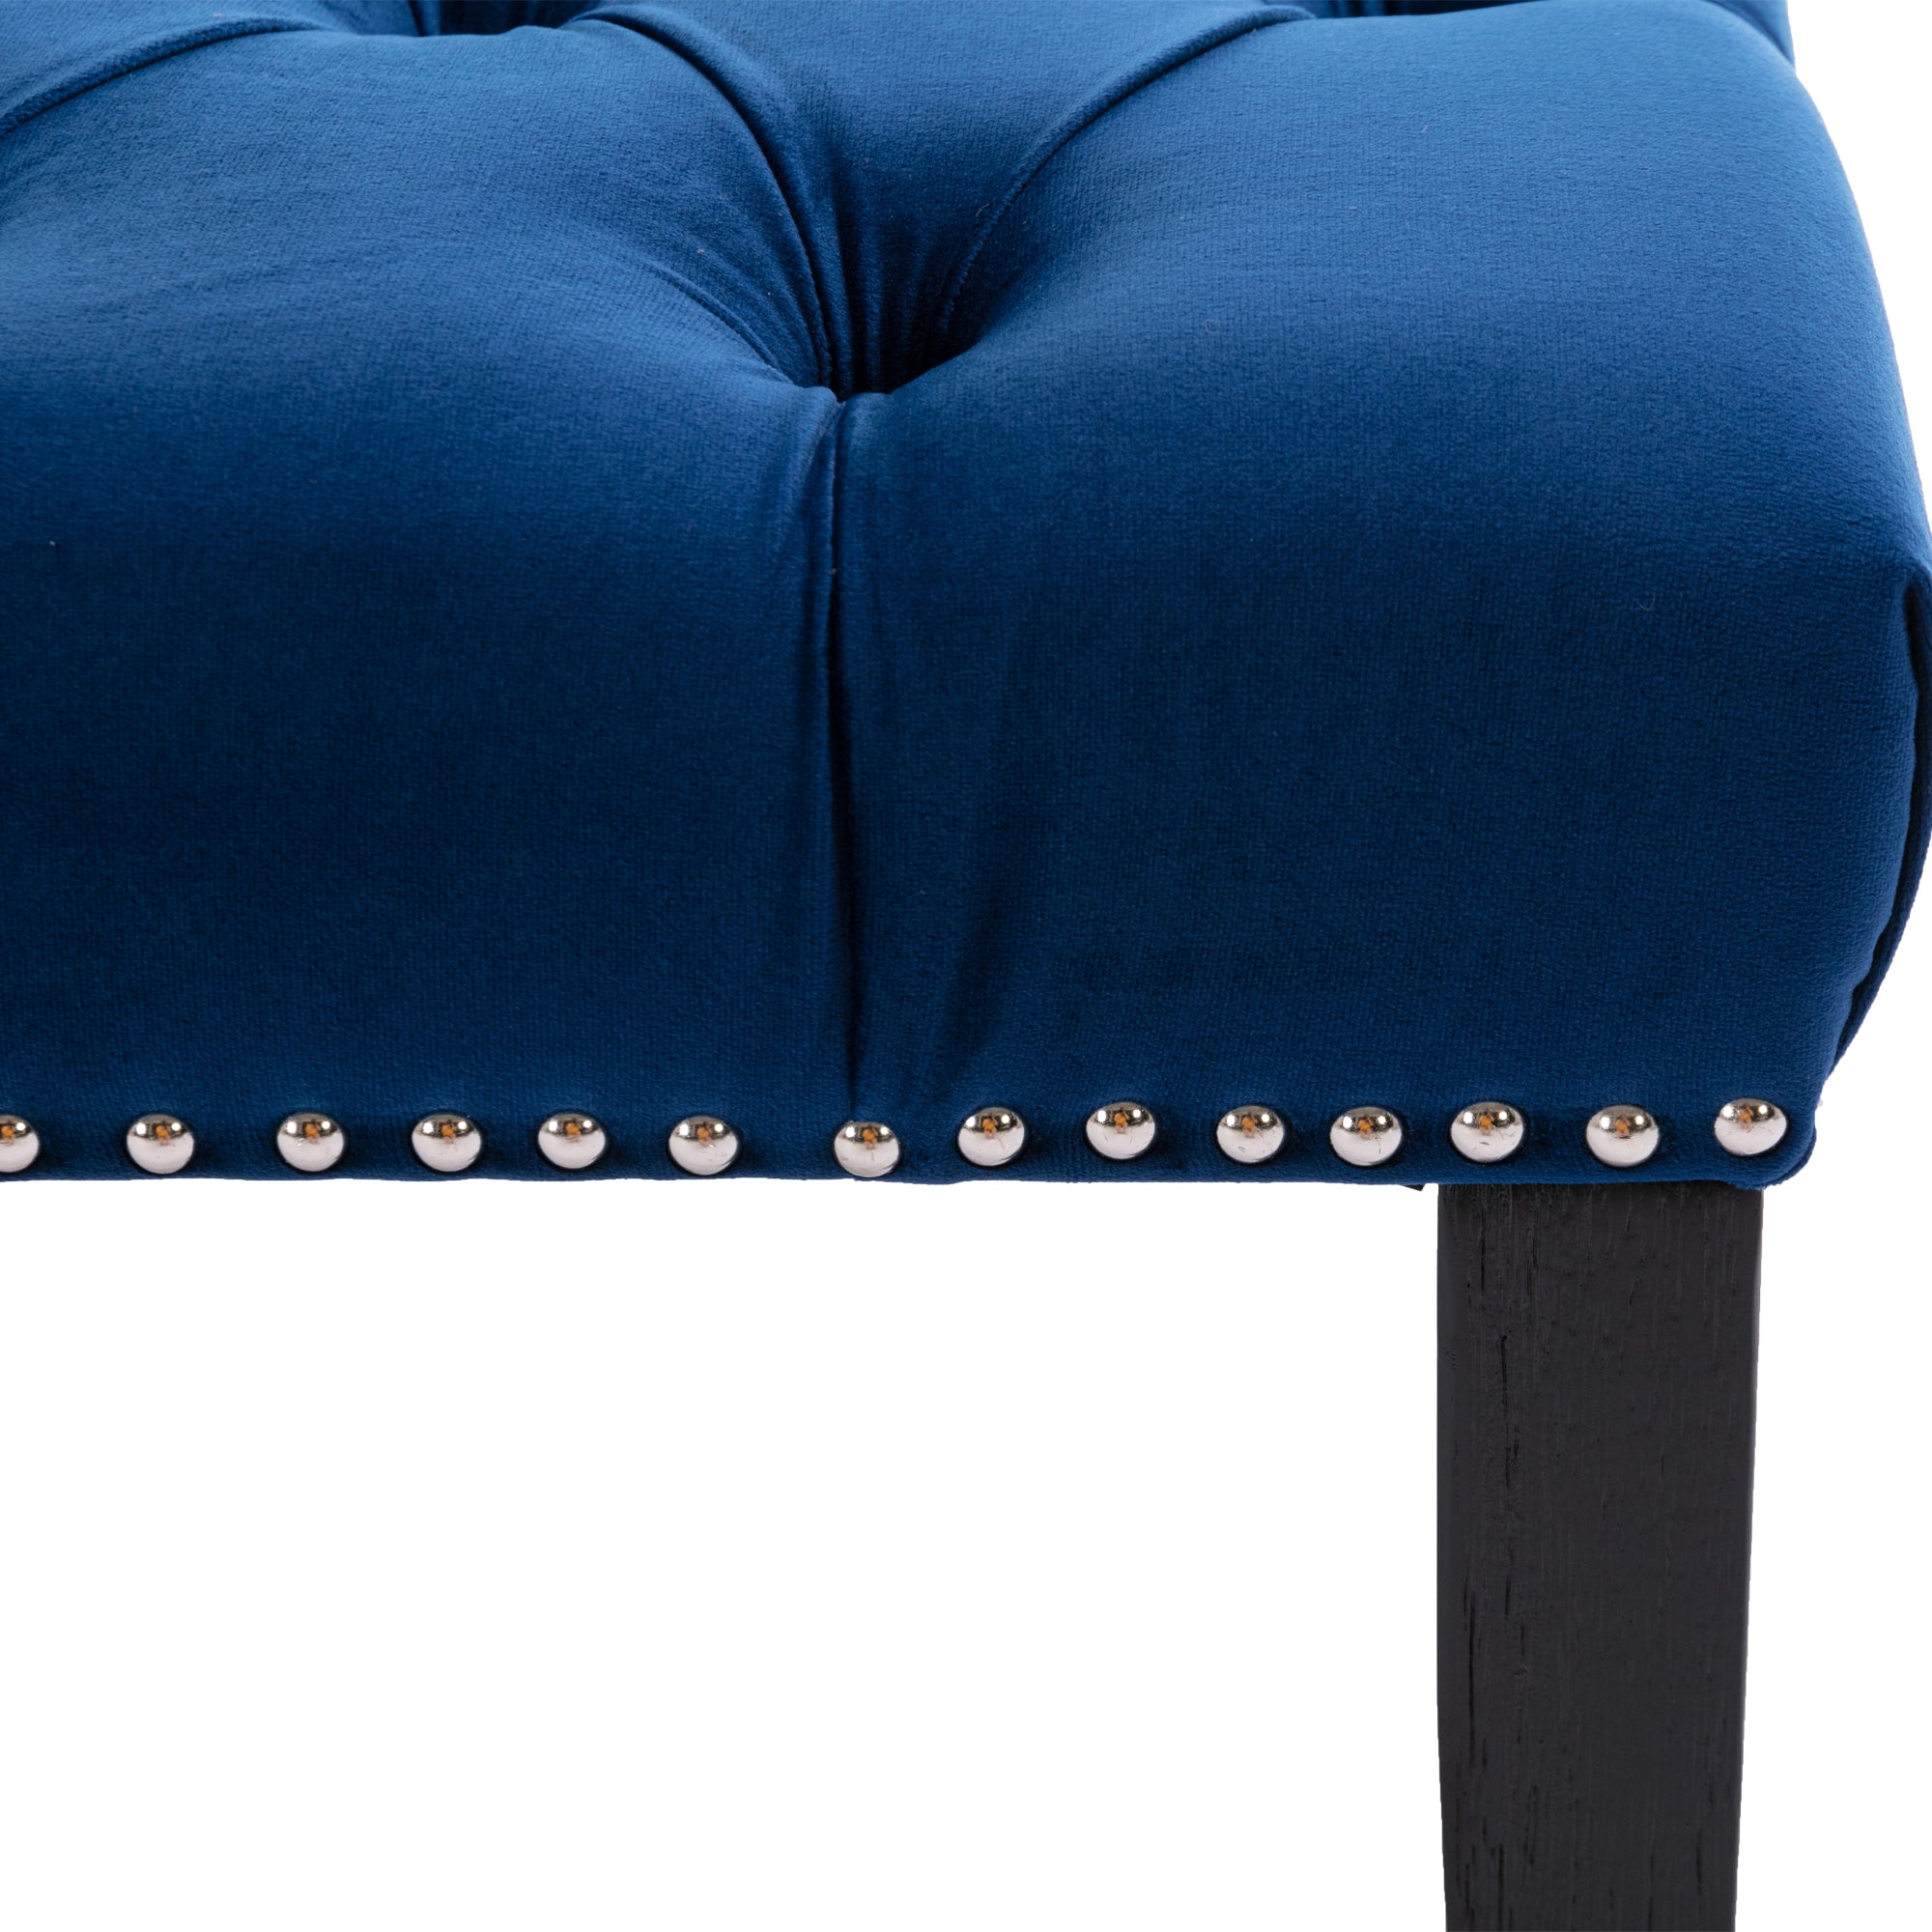 Heng Ming Upholstered Tufted Bench Ottoman , Velvet blue-velvet